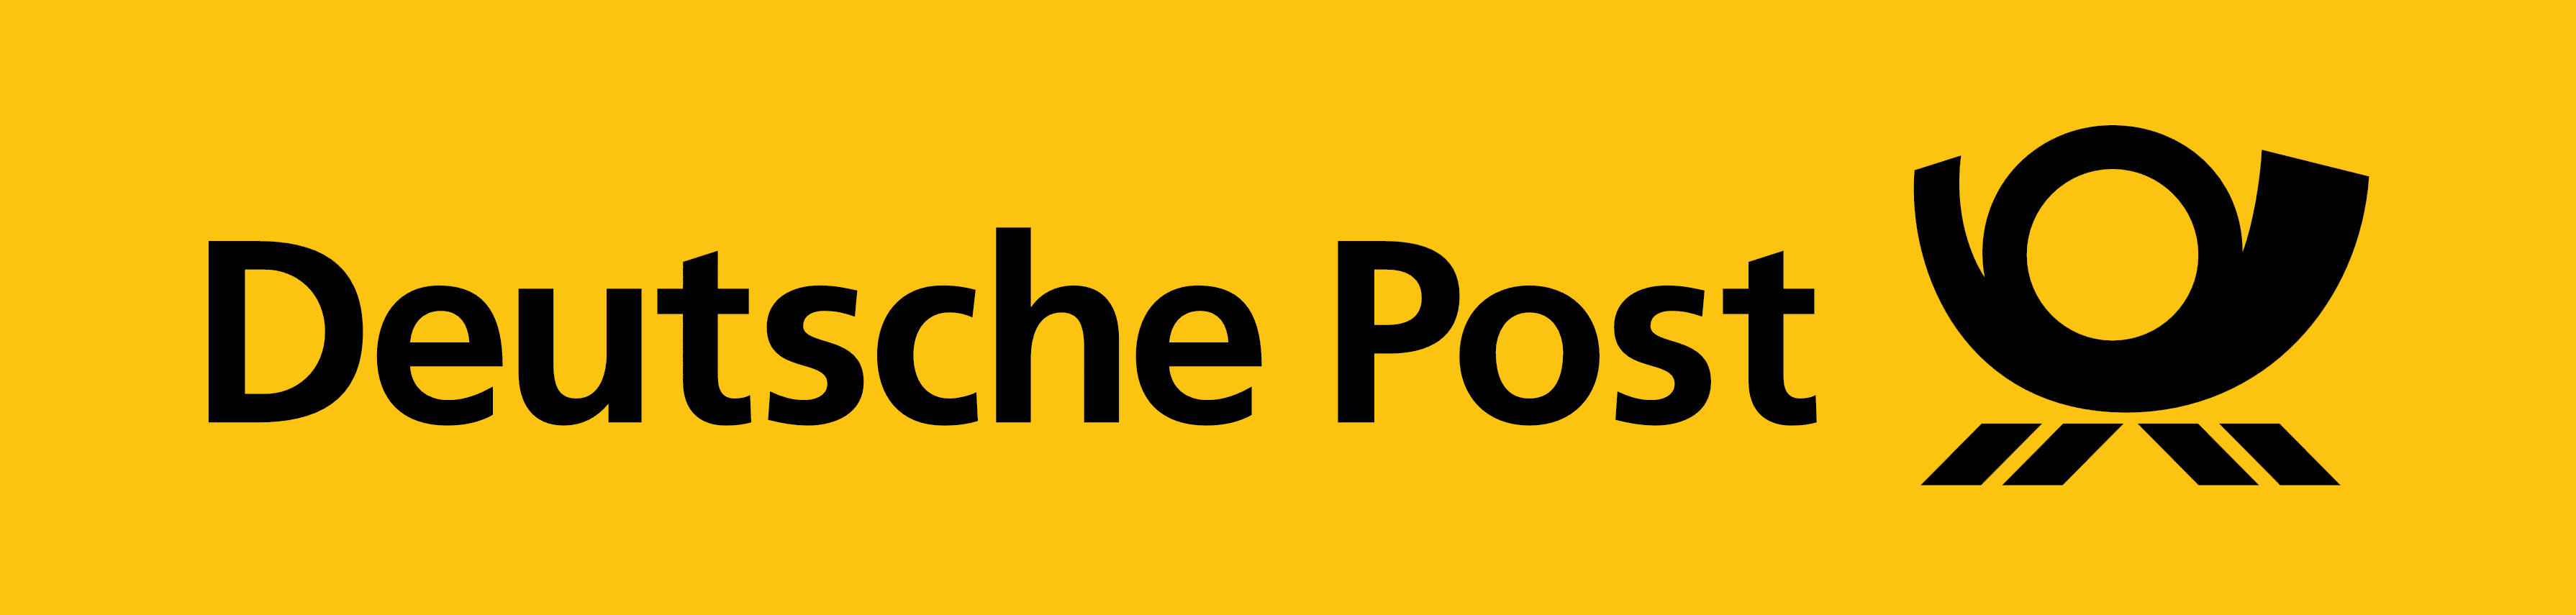 Deutsche Post – Logos Download